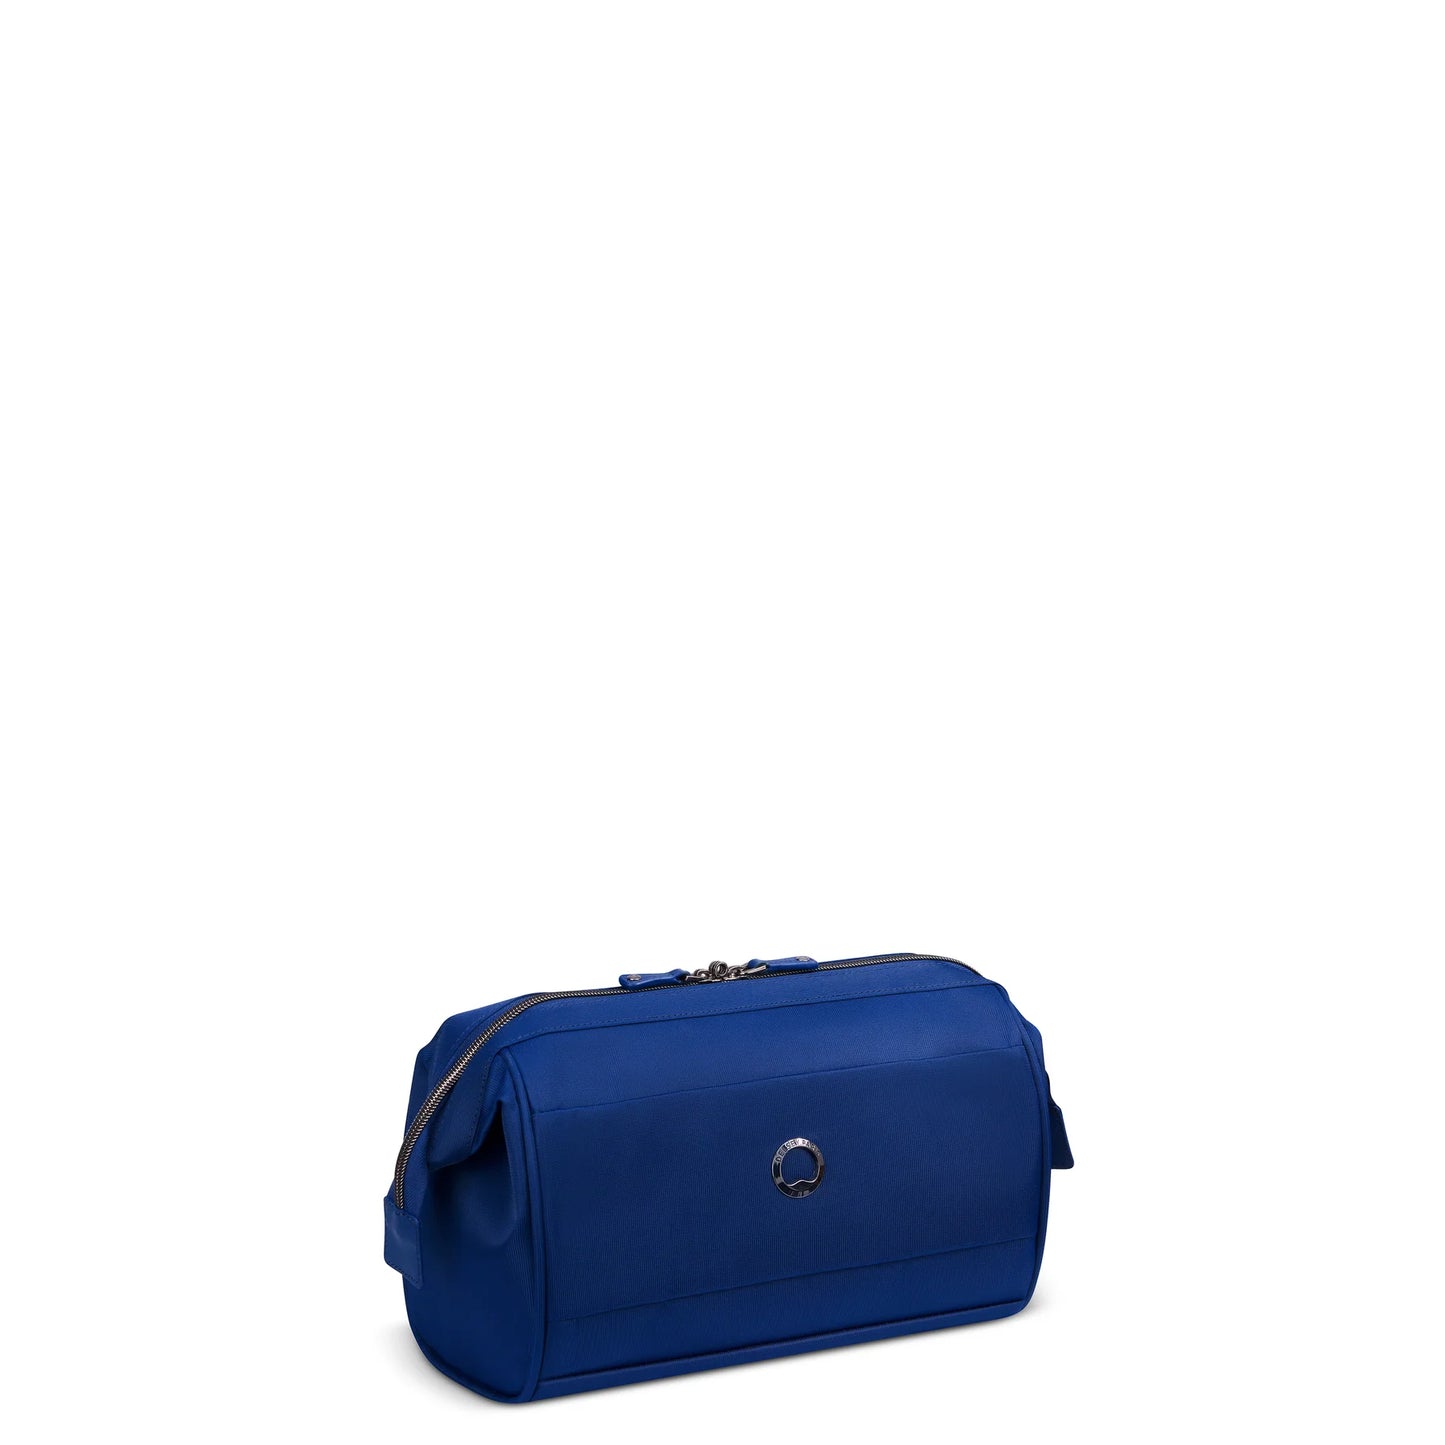 Reisetasche Delsey 002018150 Blau 